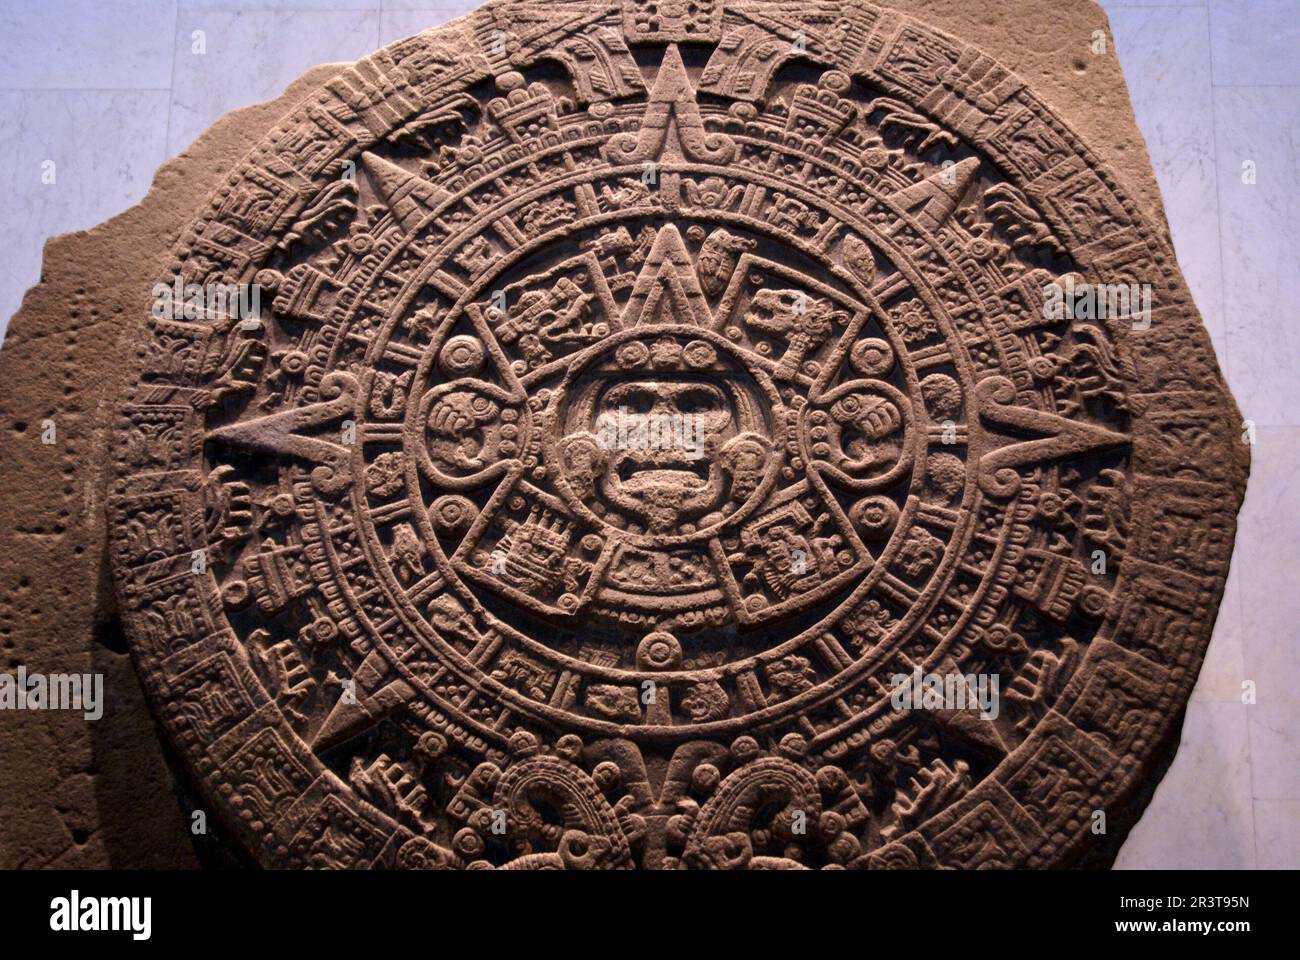 Piedra del sol. Cultura Azteca. Museo Nacional de antropologia. Estado de Mexico D.F.Mexique. Banque D'Images